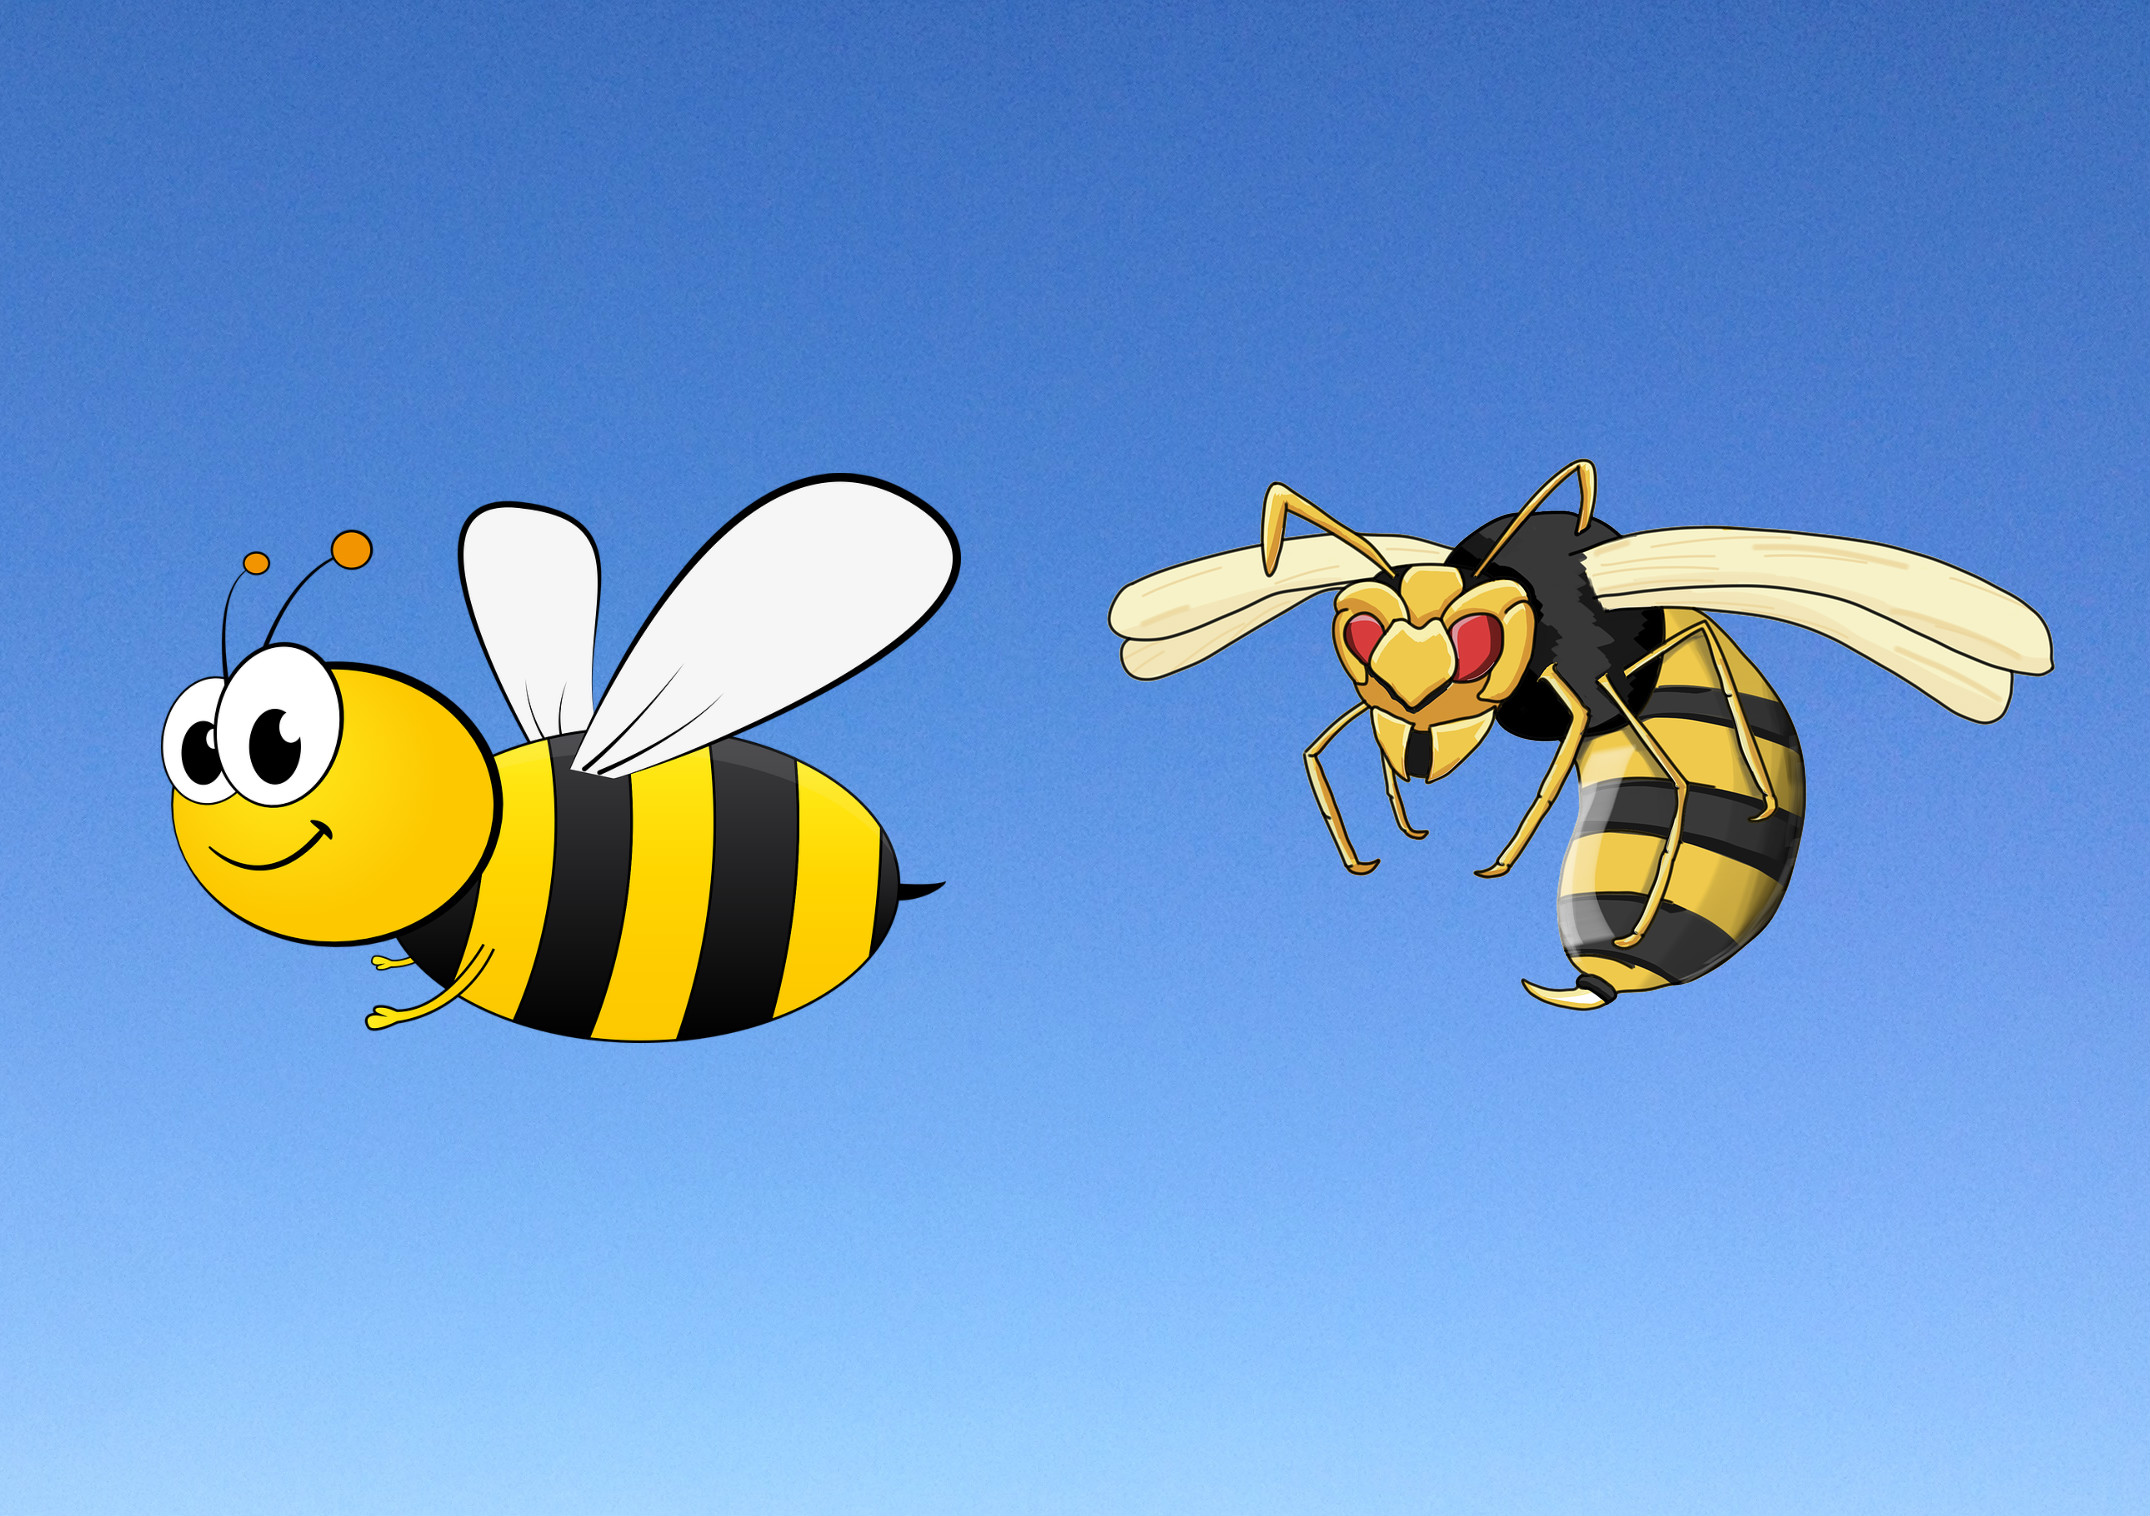 A méh jó, a darázs bezzeg rossz? Elég volt a fullánkos rasszizmusból!